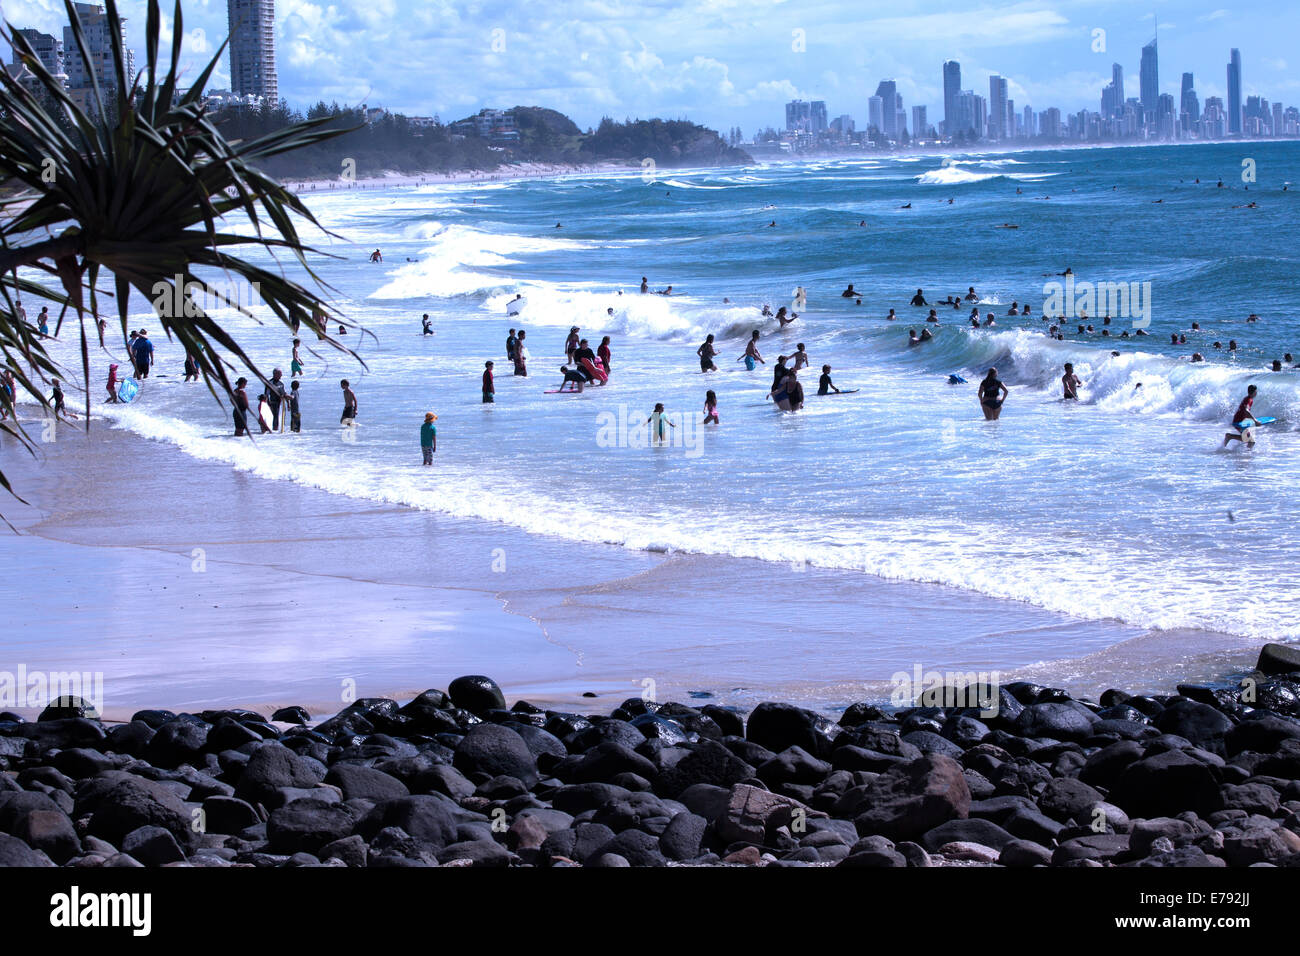 Surfers appréciant les vagues à Burleigh Heads sur la Gold Coast en Australie.Surfers Paradise se trouve dans la distance. Banque D'Images